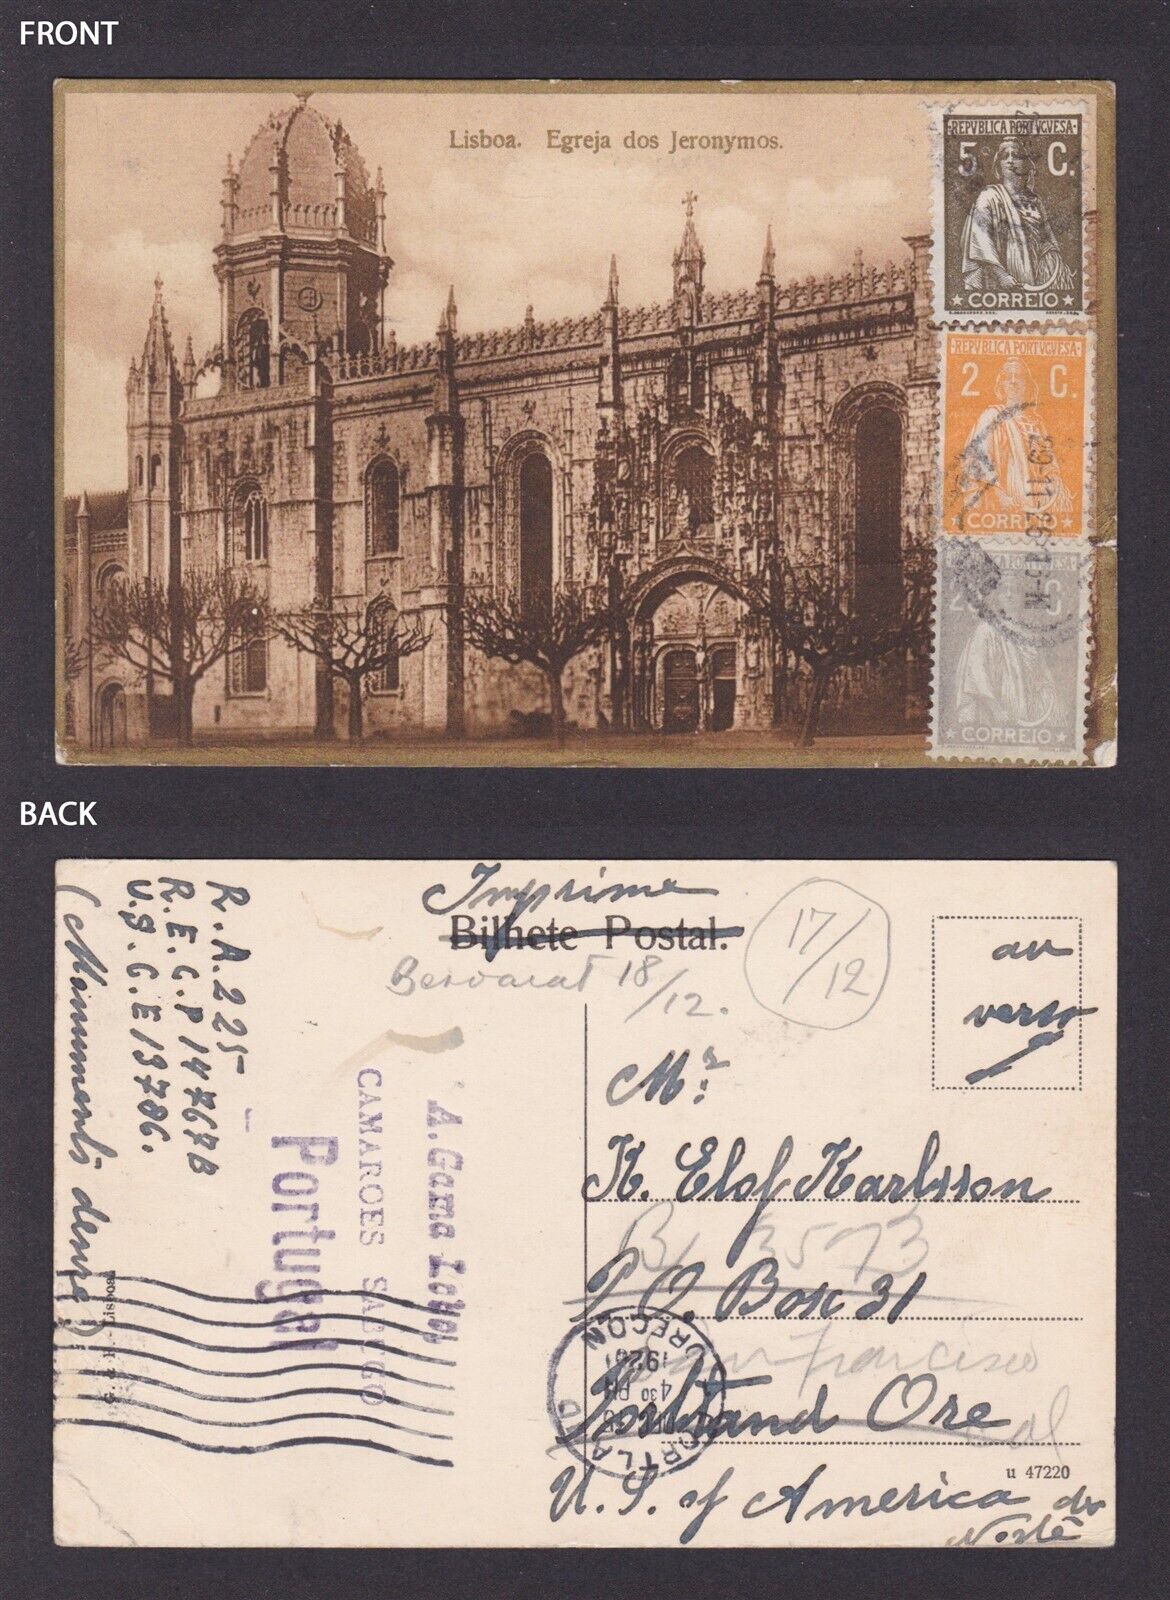 PORTUGAL, Vintage postcard, Lisbon, Jeronimos Monastery